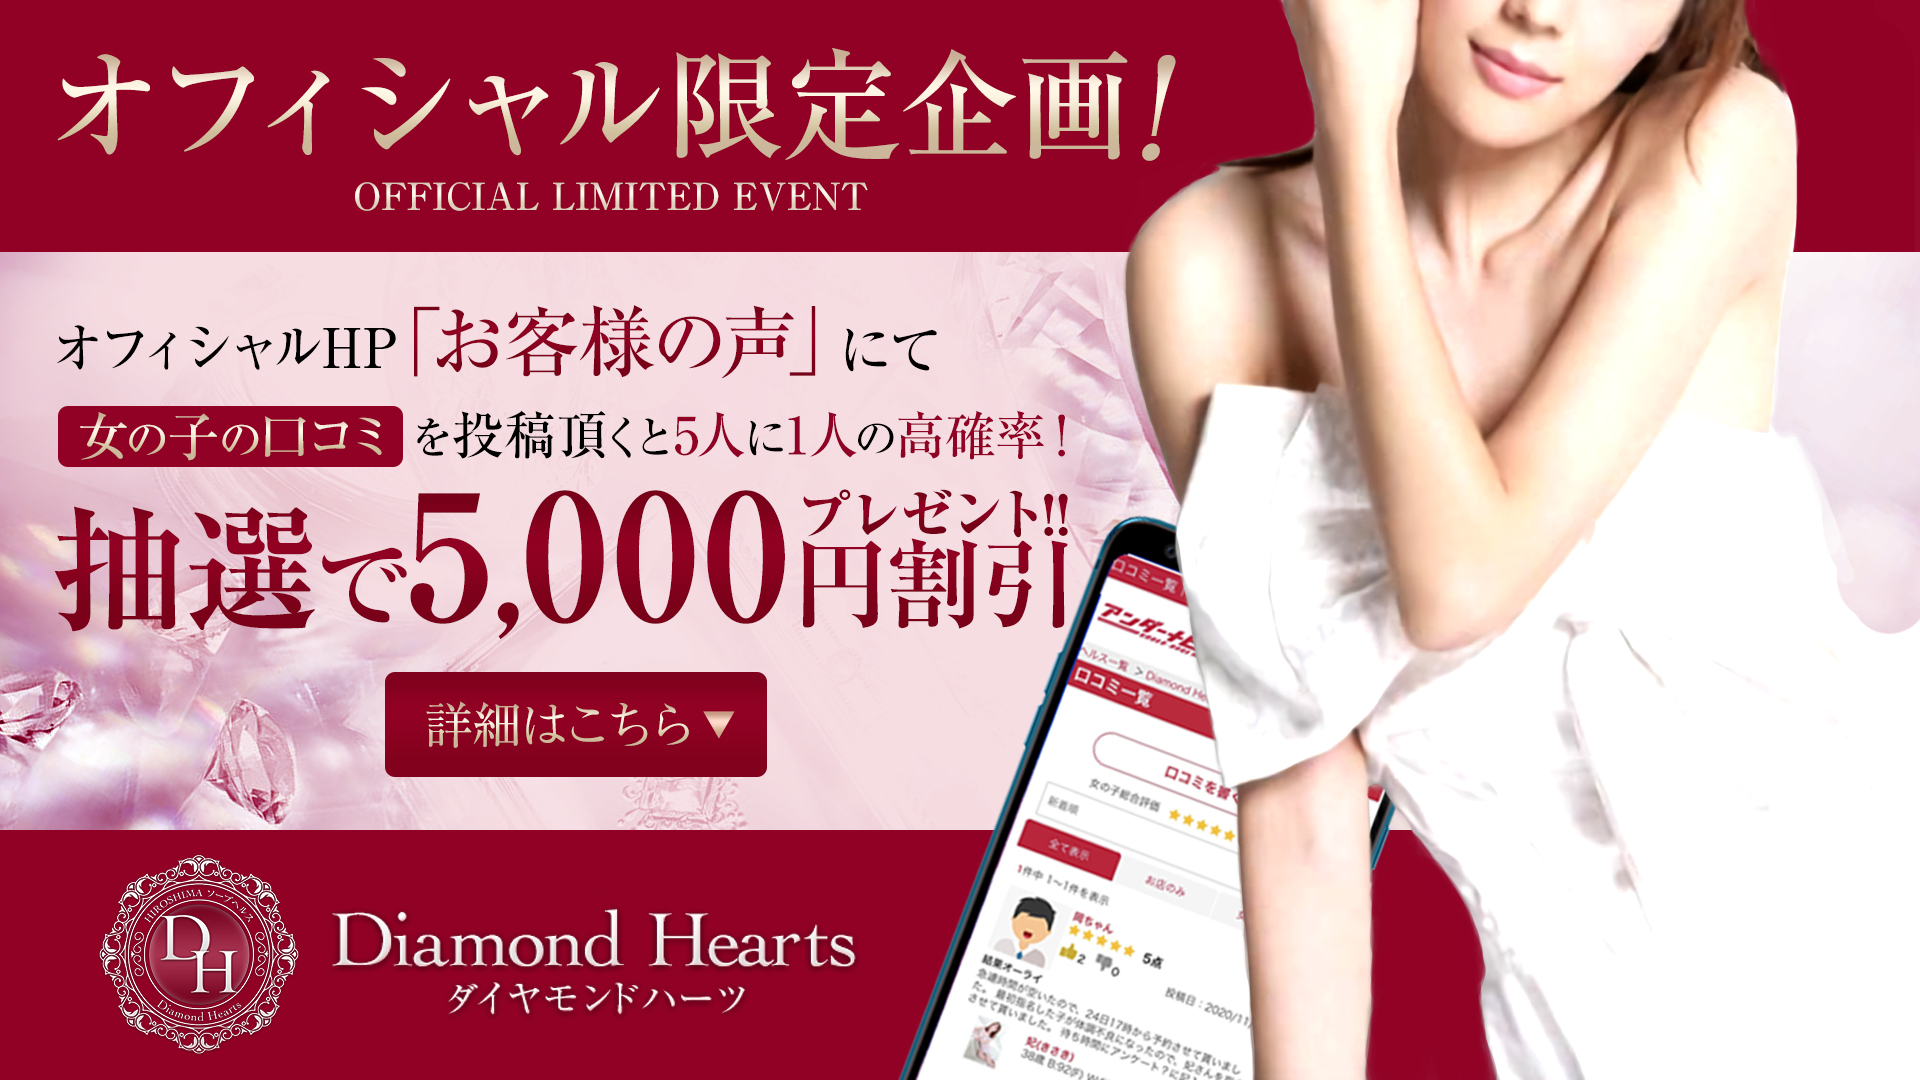 Diamond Hearts(ダイヤモンドハーツ)（広島市ソープヘルス）